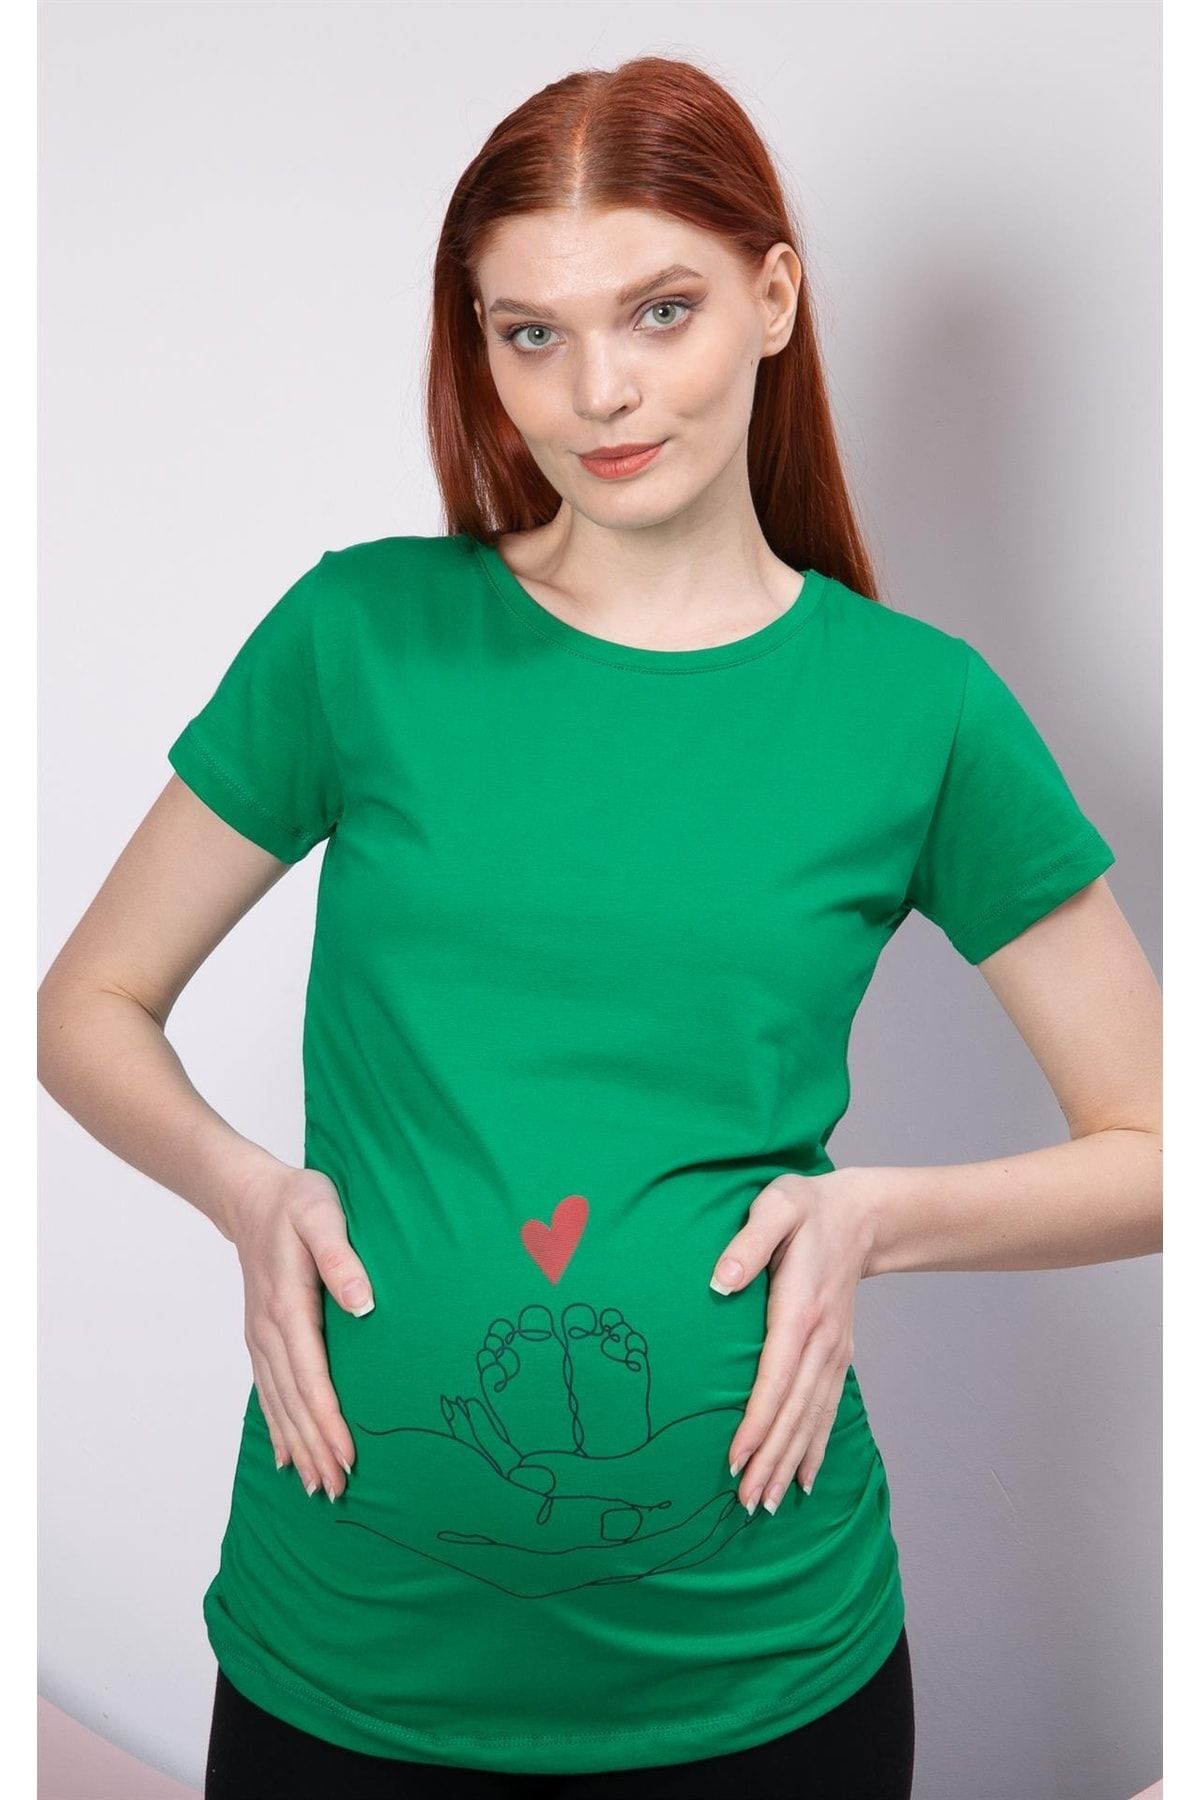 Görsin Hamile Gör&sin Espirili Baskılı Hamile Yeşil Tişört